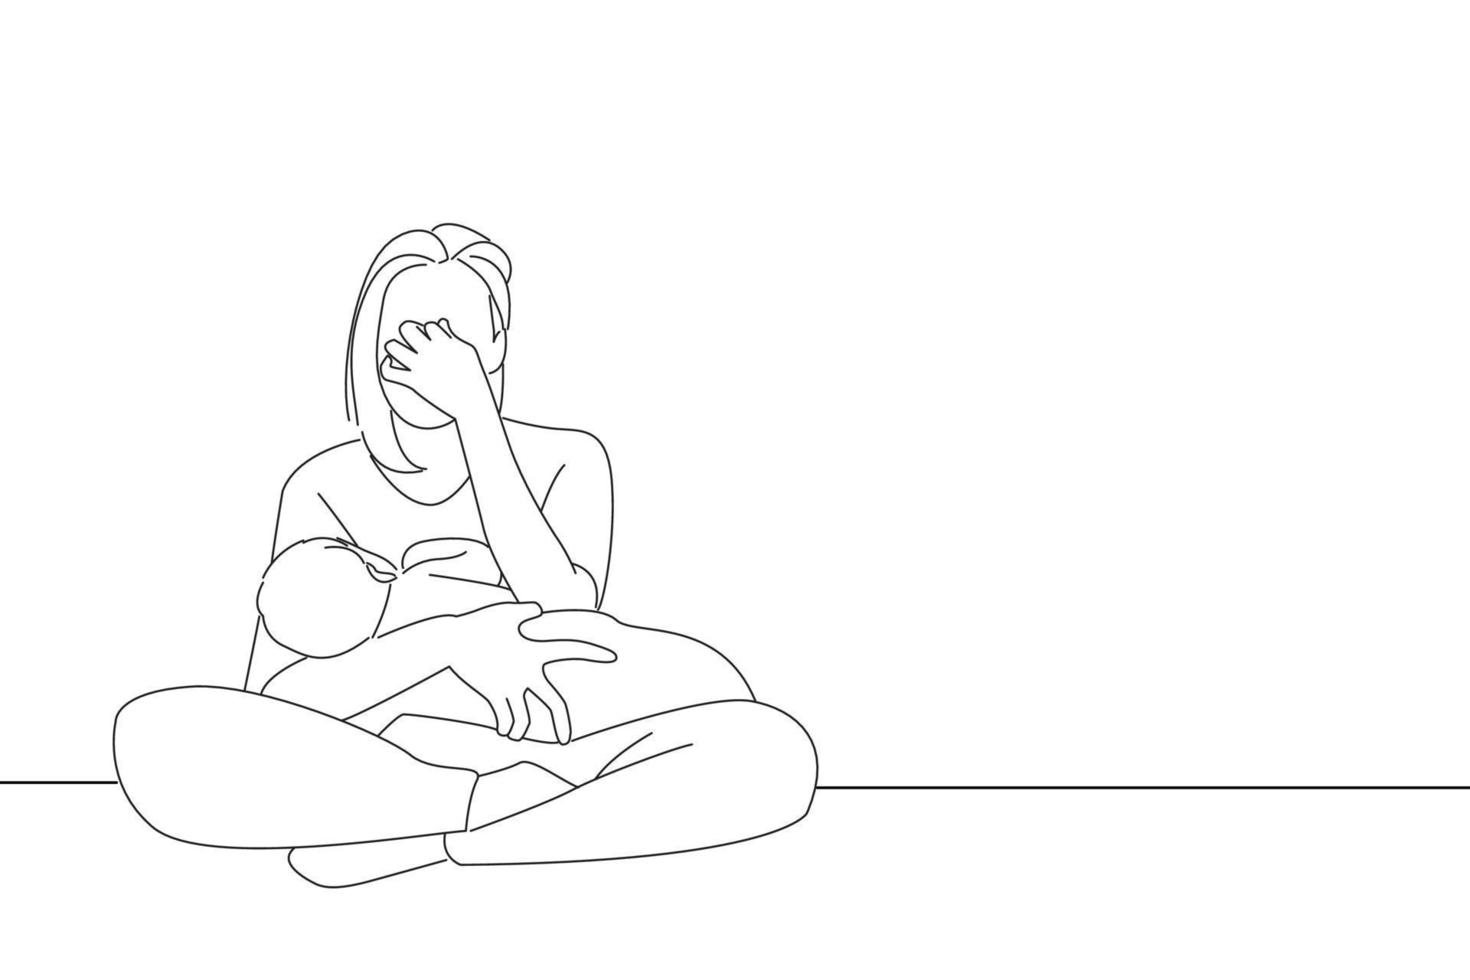 caricatura de madre cansada que sufre de depresión posparto estrés de maternidad de madre soltera. arte de estilo de dibujo de contorno vector